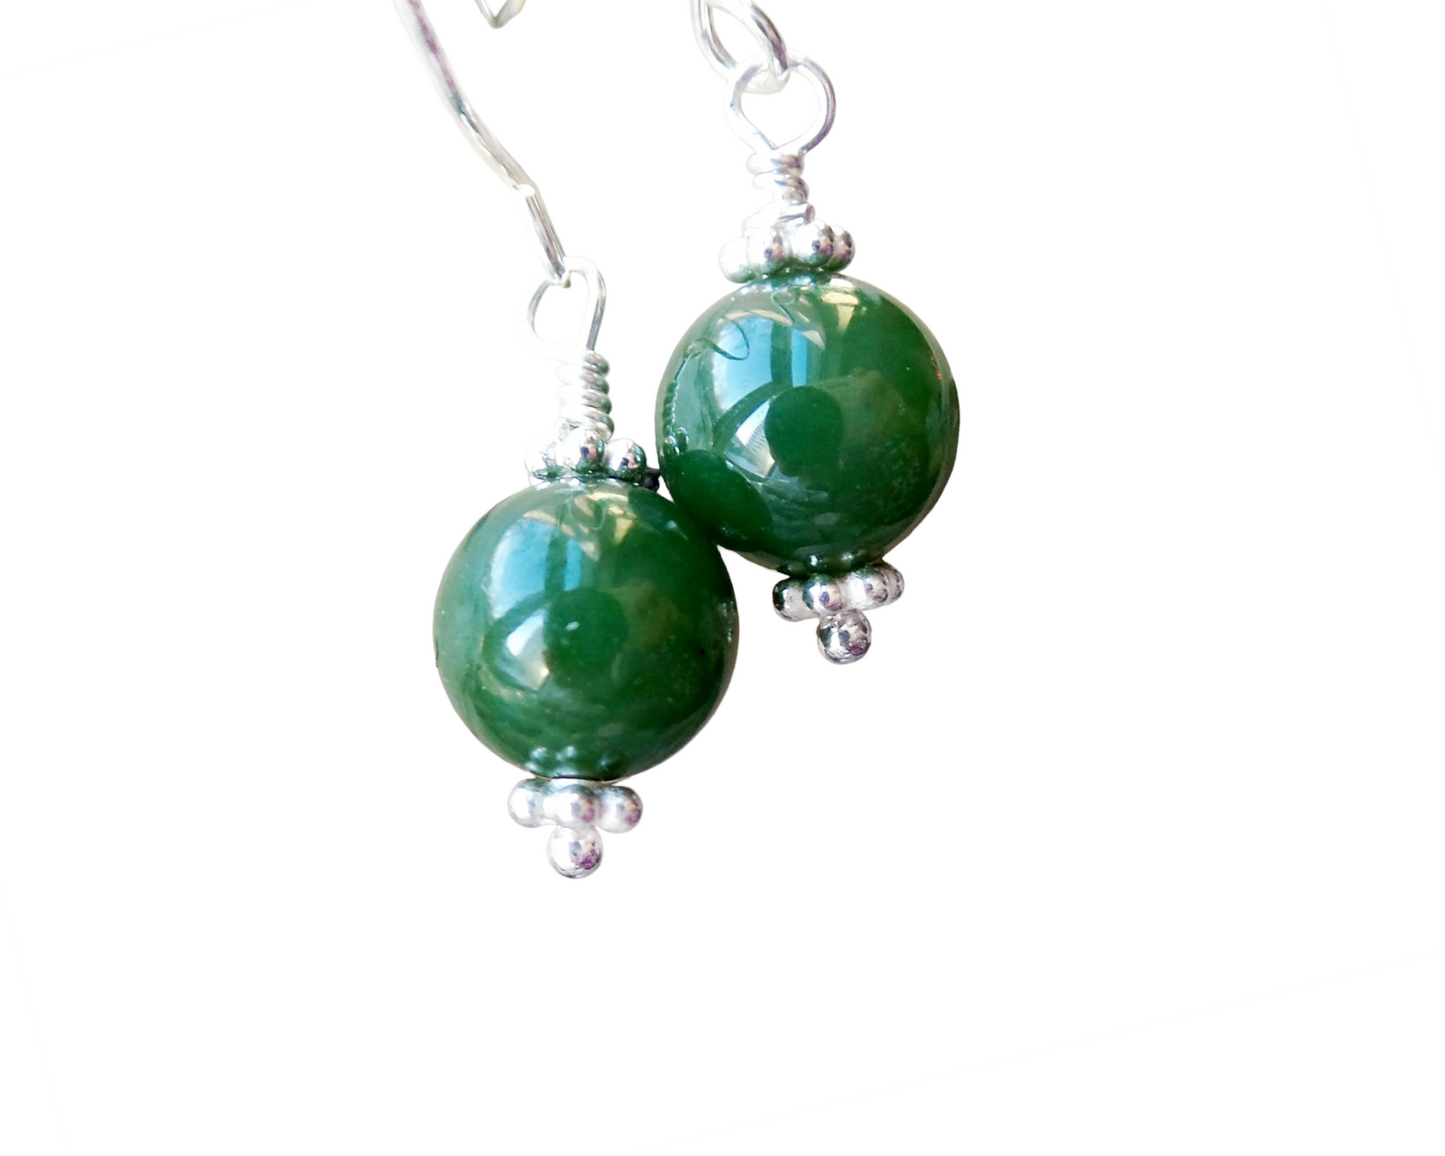 Vintage Canadian BC Jade Dangle Earrings, Sterling Silver, Green Nephrite Jade Stones